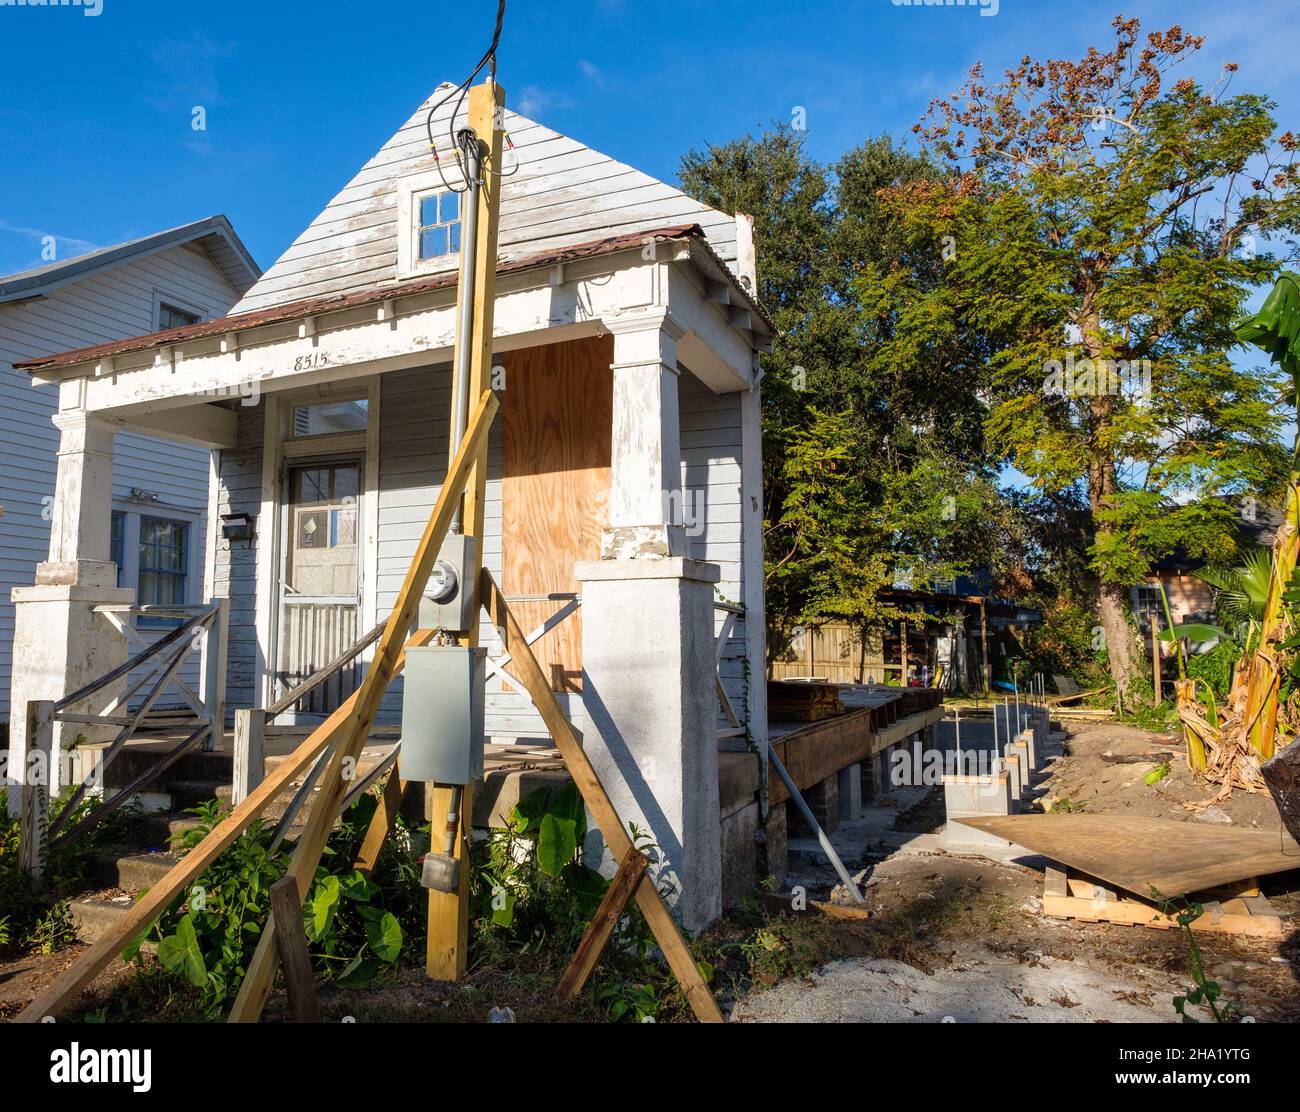 NUEVA ORLEANS, LA, EE.UU. - 5 DE DICIEMBRE de 2021: Vista frontal de la casa en construcción en el barrio de Uptown utilizando la fachada antigua Foto de stock